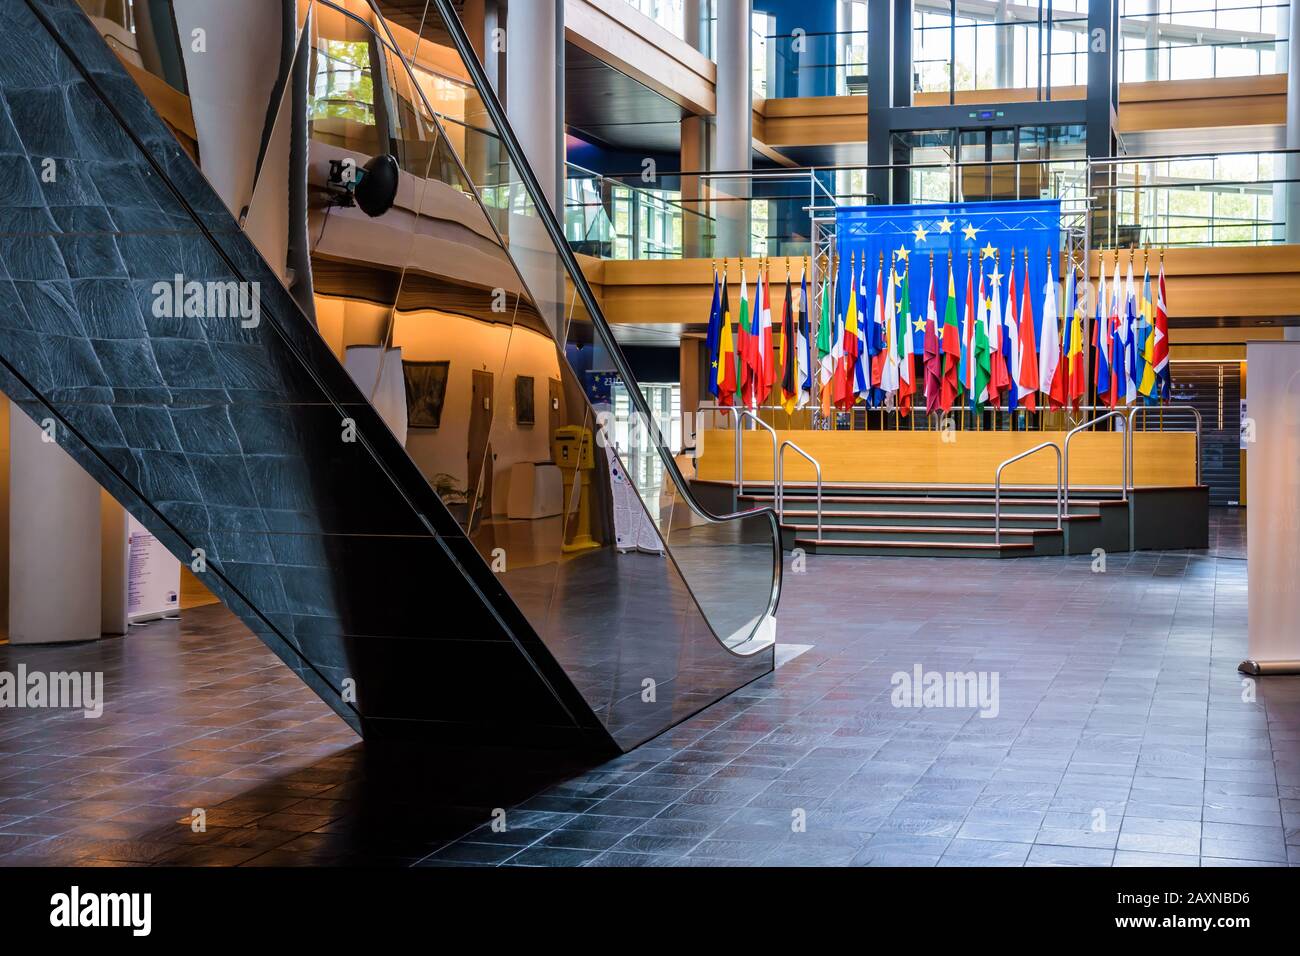 Avec les drapeaux des Etats membres de l'Union européenne dans le bâtiment Louise Weiss, siège du Parlement européen à Strasbourg, France. Banque D'Images